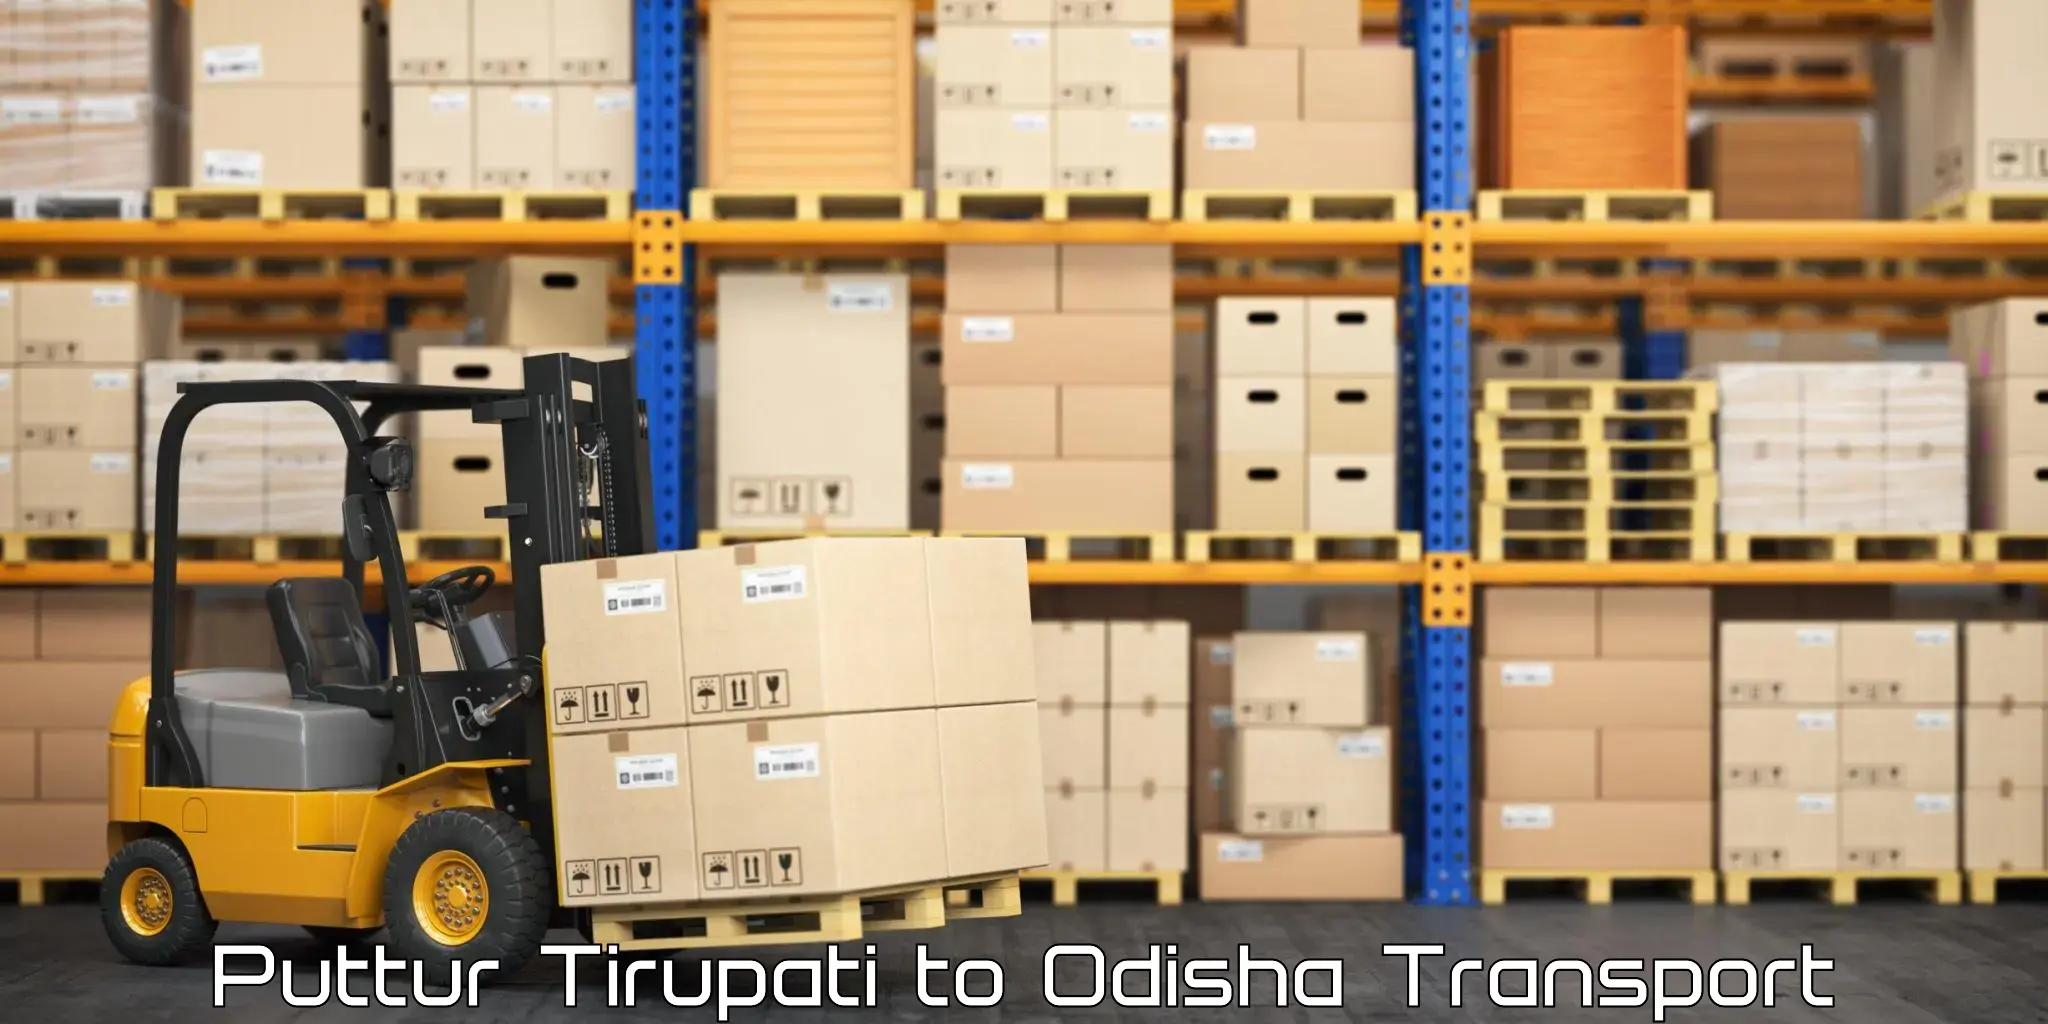 Furniture transport service Puttur Tirupati to Salipur